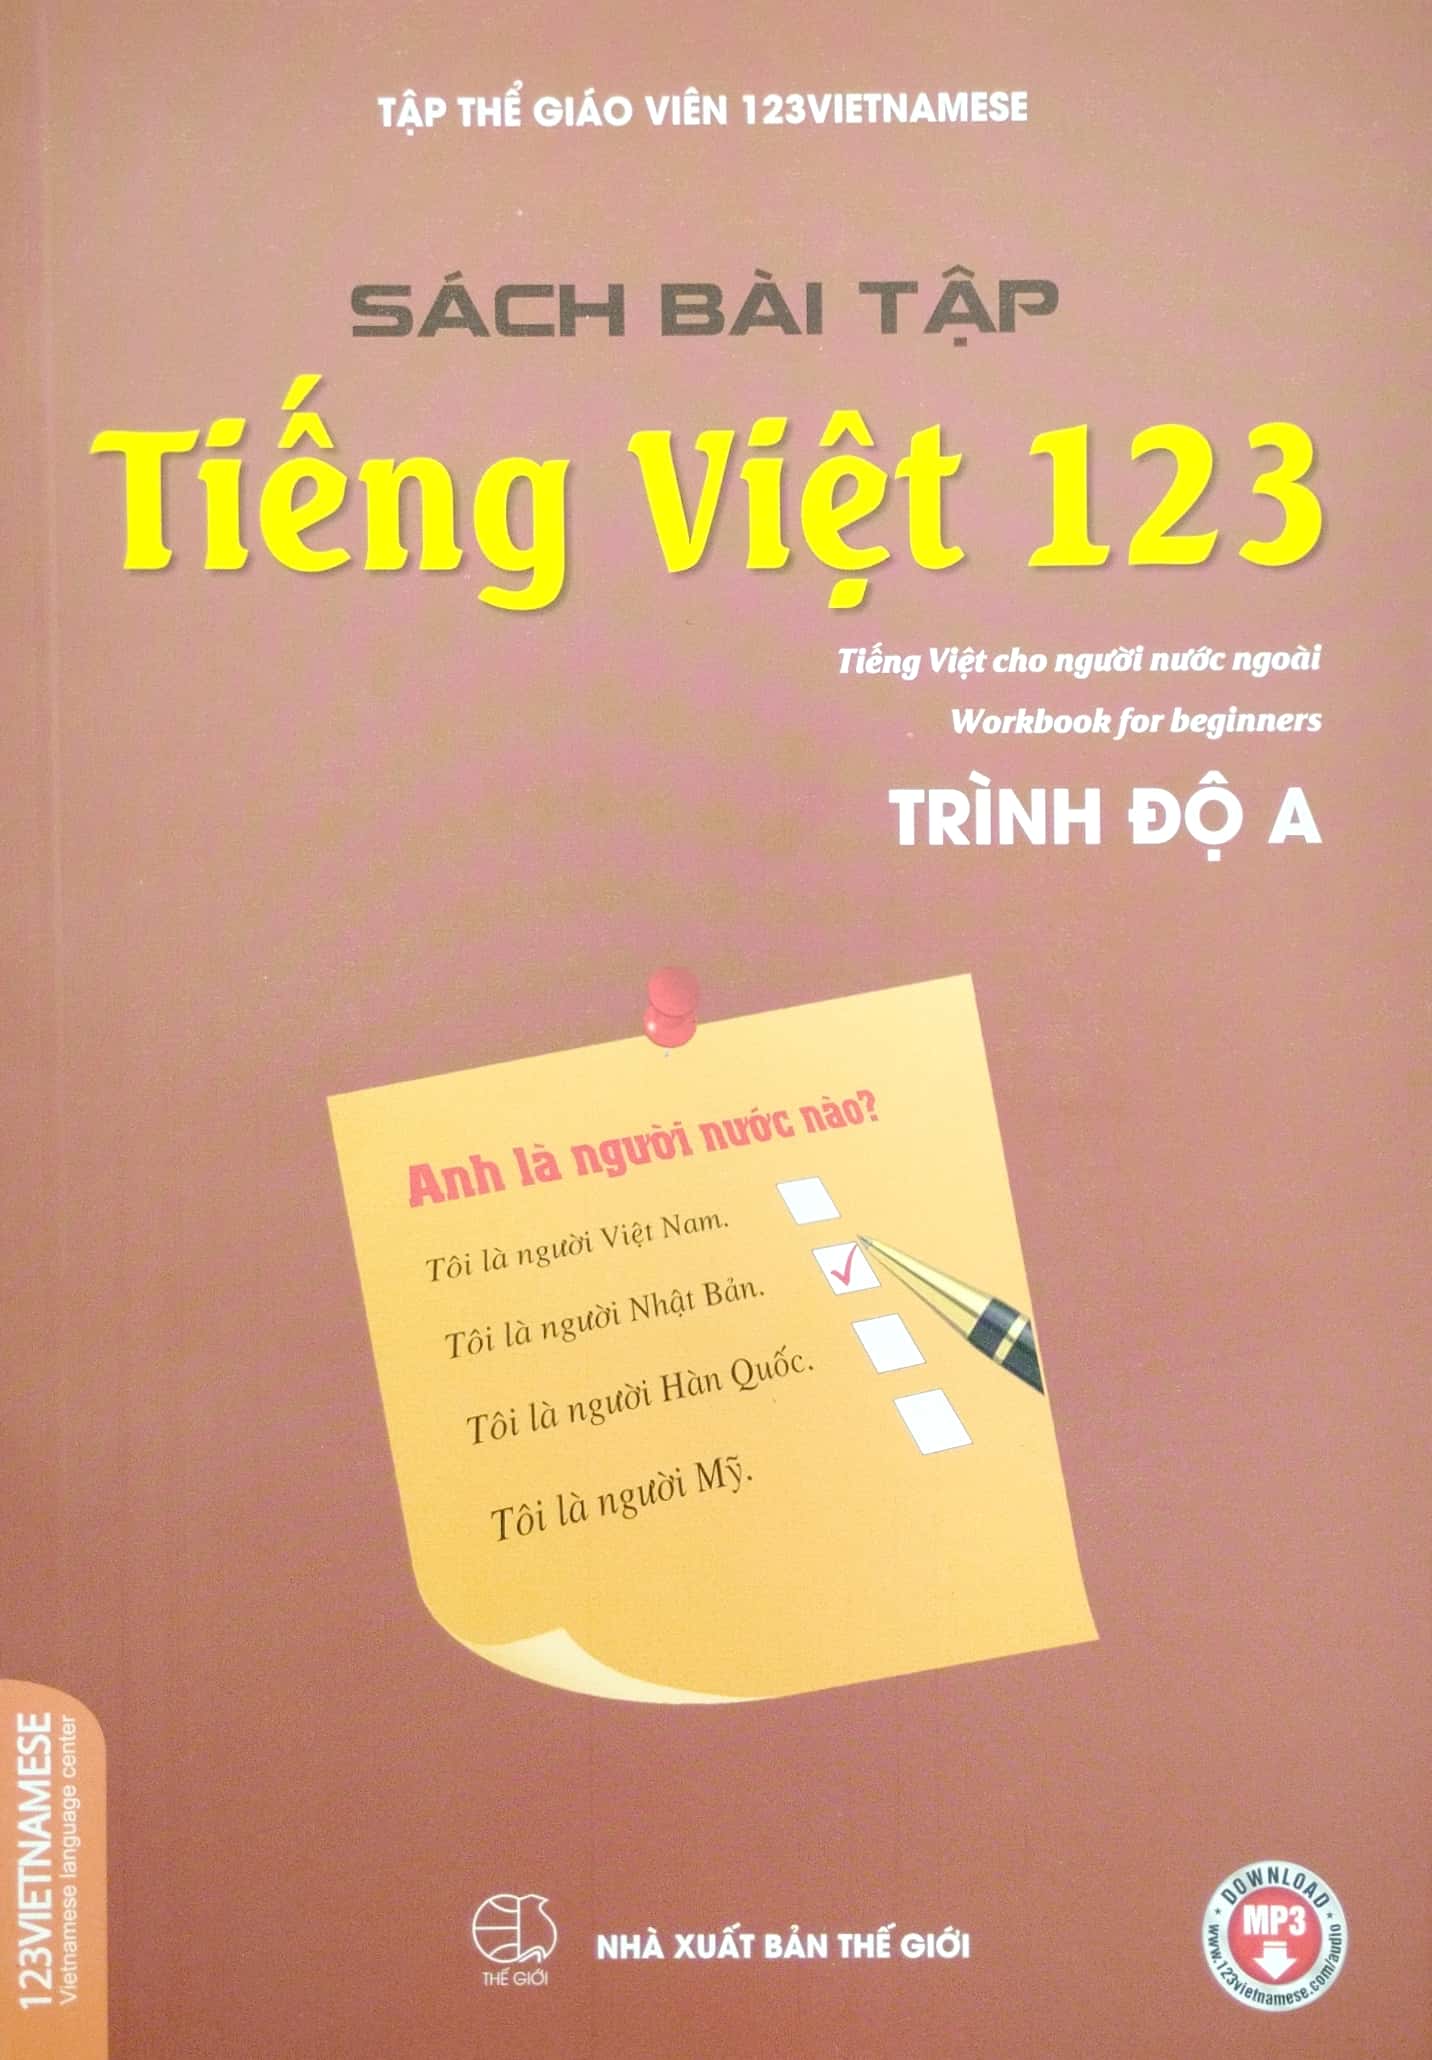 Bài Tập Tiếng Việt 123 - Tiếng Việt Dành Cho Người Nước Ngoài - Trình Độ A PDF